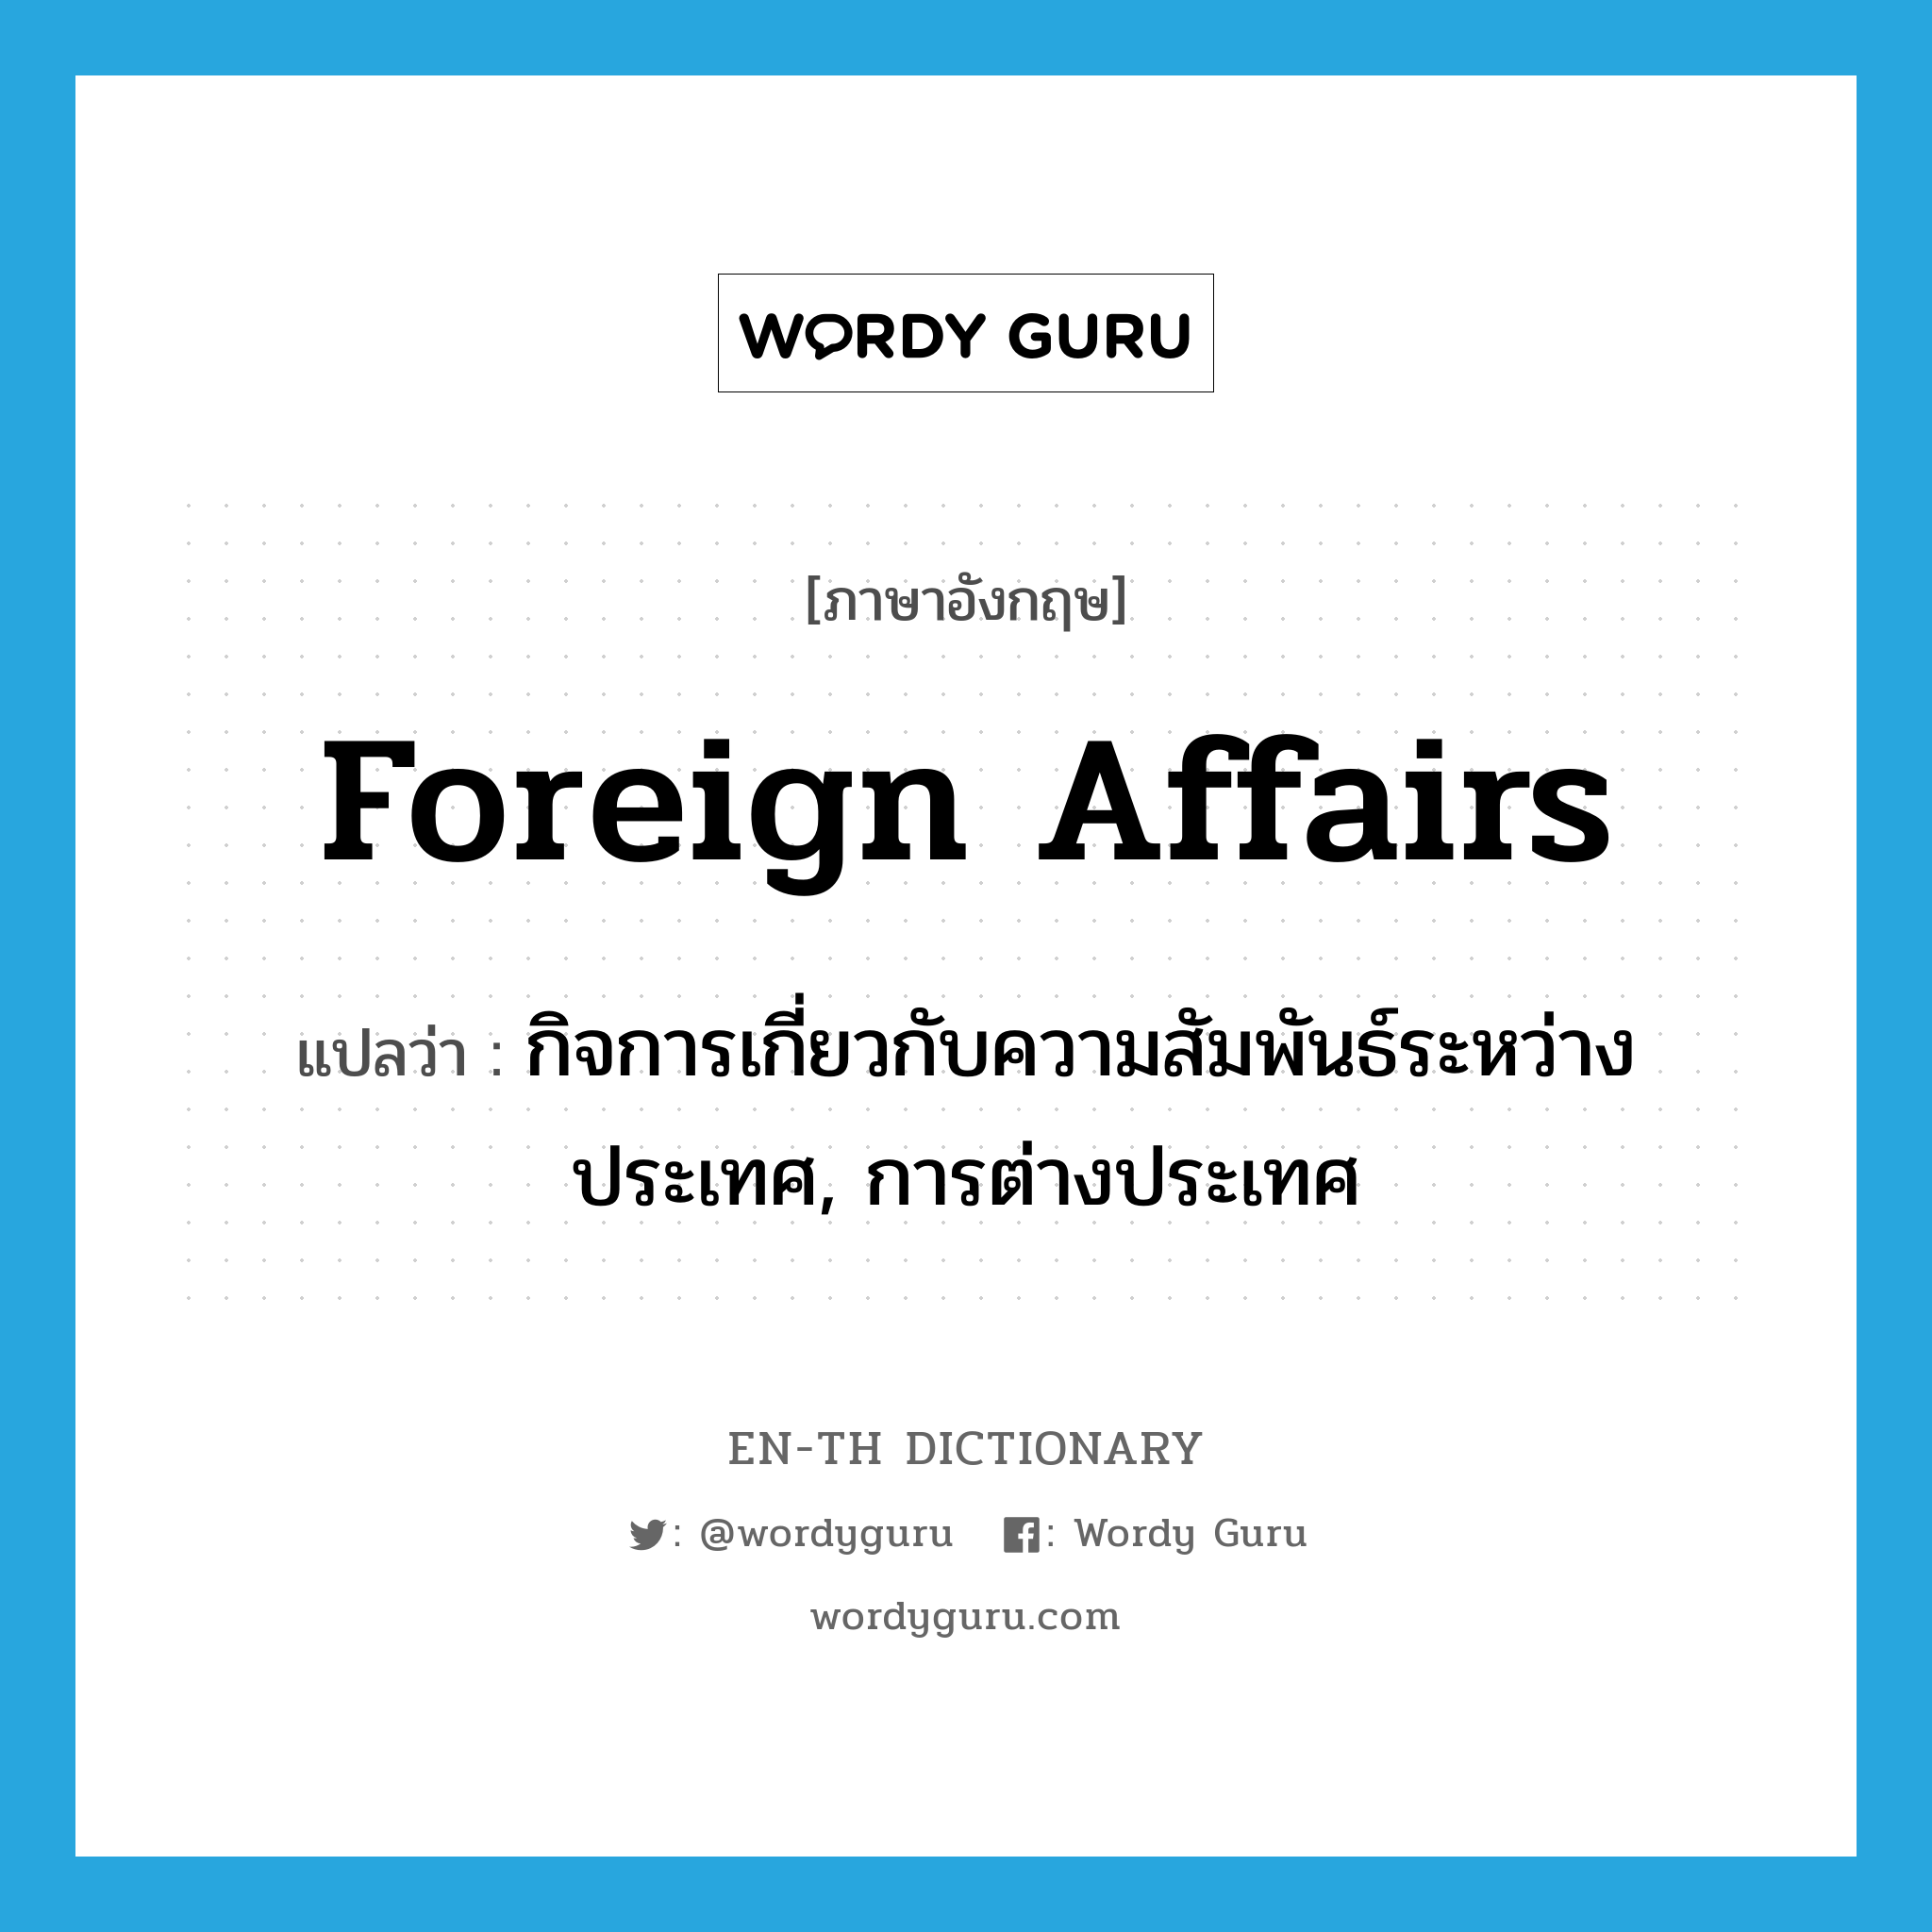 foreign affairs แปลว่า?, คำศัพท์ภาษาอังกฤษ foreign affairs แปลว่า กิจการเกี่ยวกับความสัมพันธ์ระหว่างประเทศ, การต่างประเทศ ประเภท N หมวด N